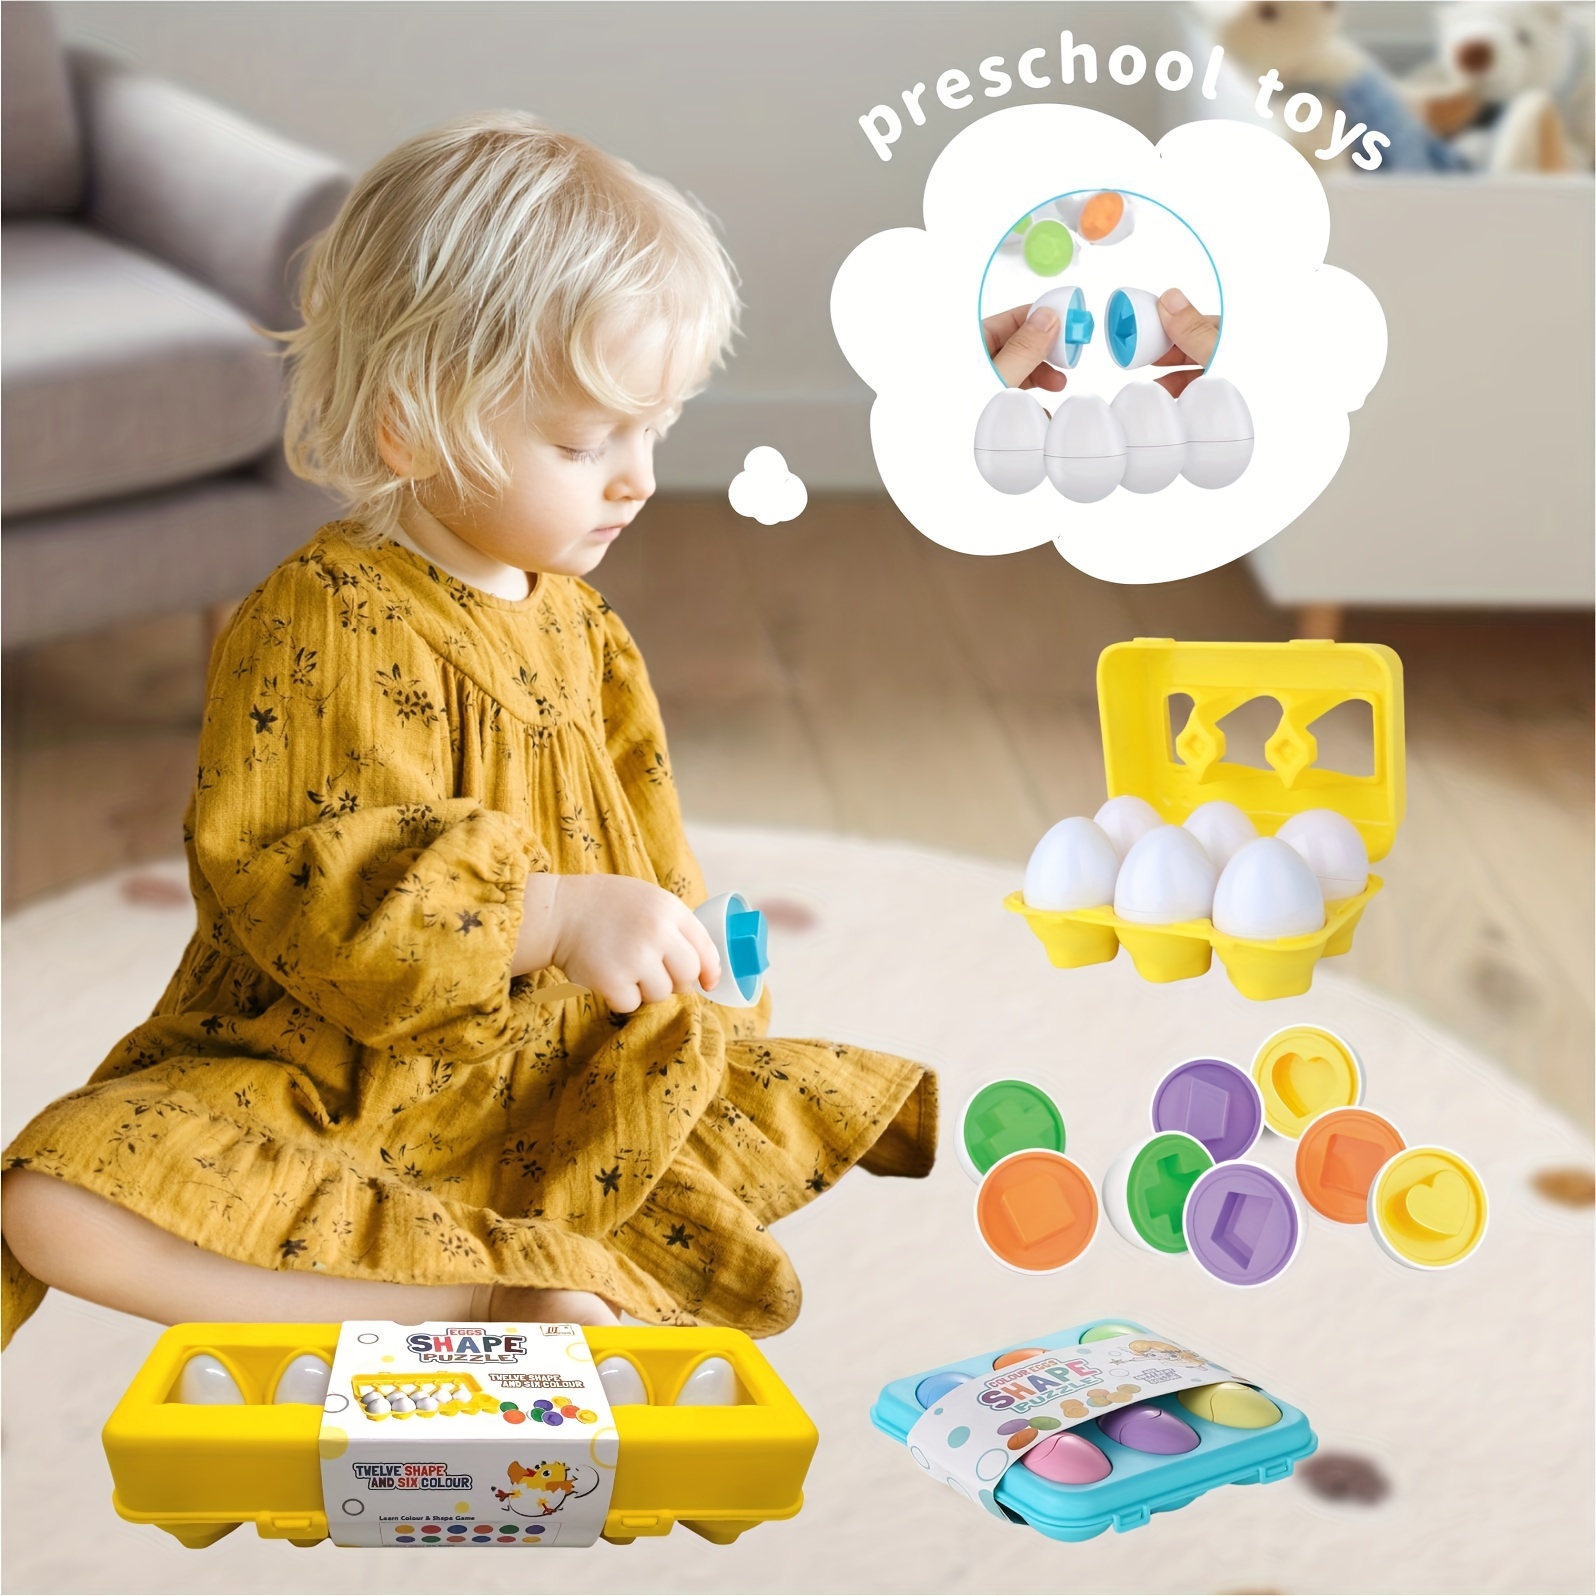 6 pièces ou 12 pièces, oeufs assortis, avec un support jaune ou bleu, oeufs  de Pâques, décoration d'oeuf de Pâques, jouet éducatif précoce, jouet pour  tout-petit, jouets de reconnaissance de forme et